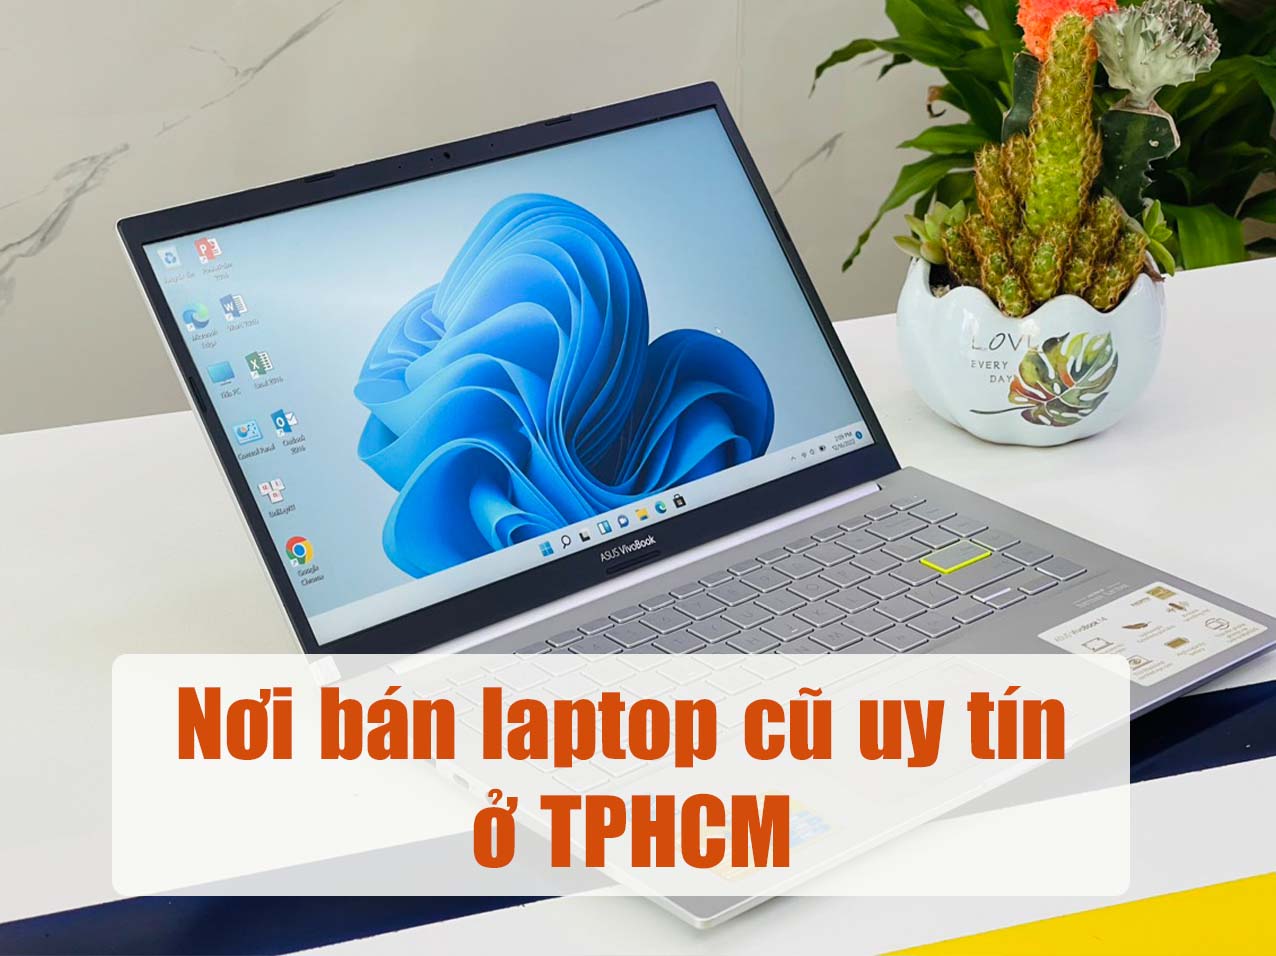 Nơi bán laptop cũ uy tín ở TPHCM ở đâu và các rủi ro khi mua cần tránh